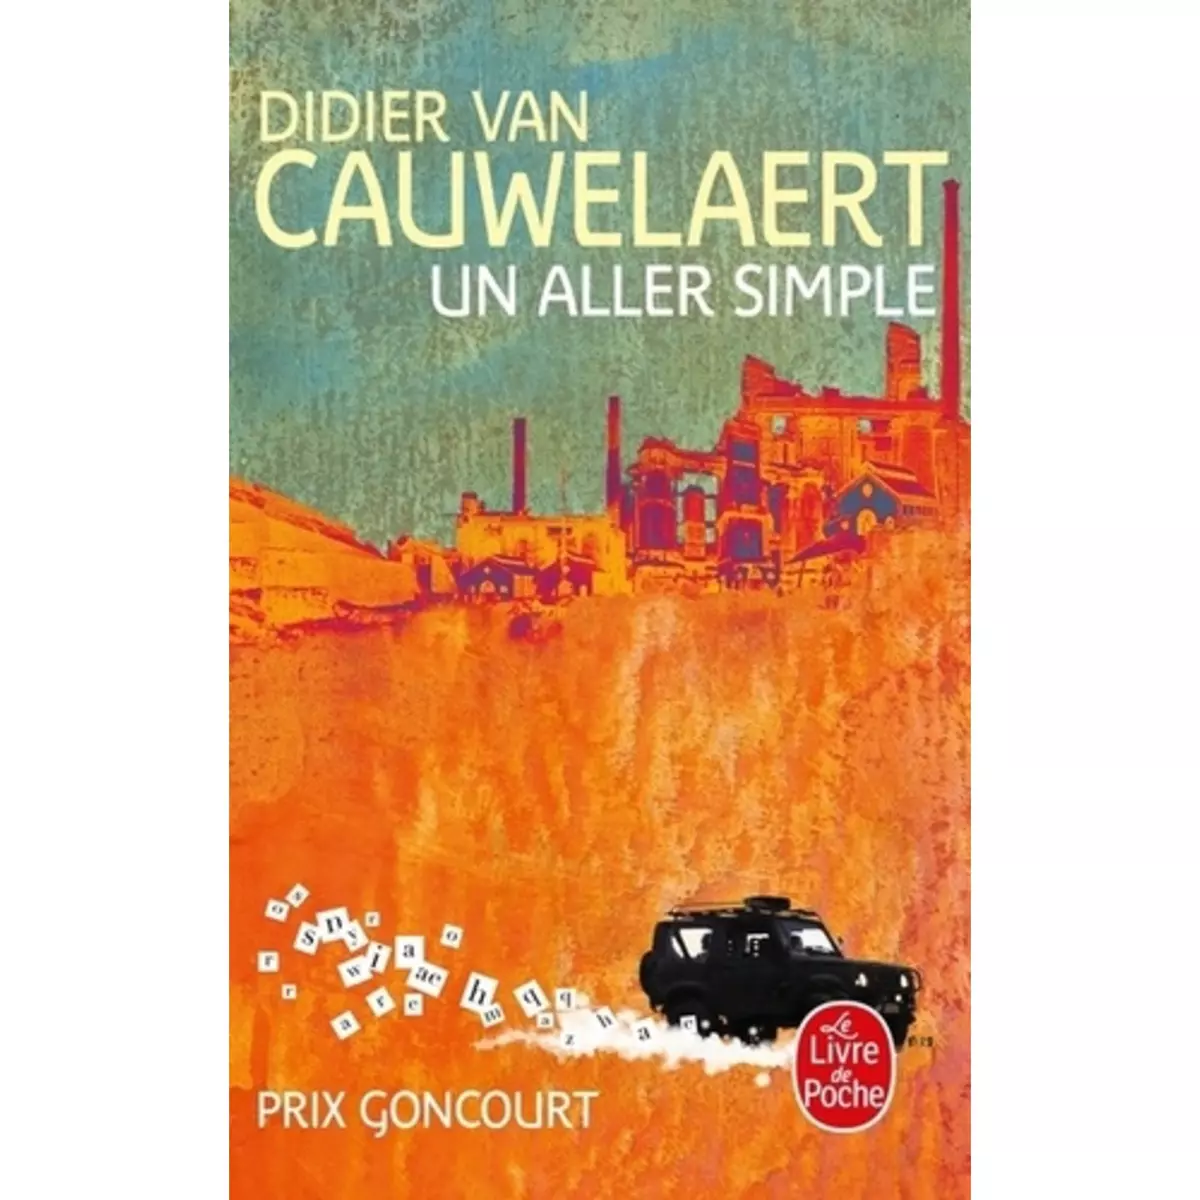  UN ALLER SIMPLE, Van Cauwelaert Didier